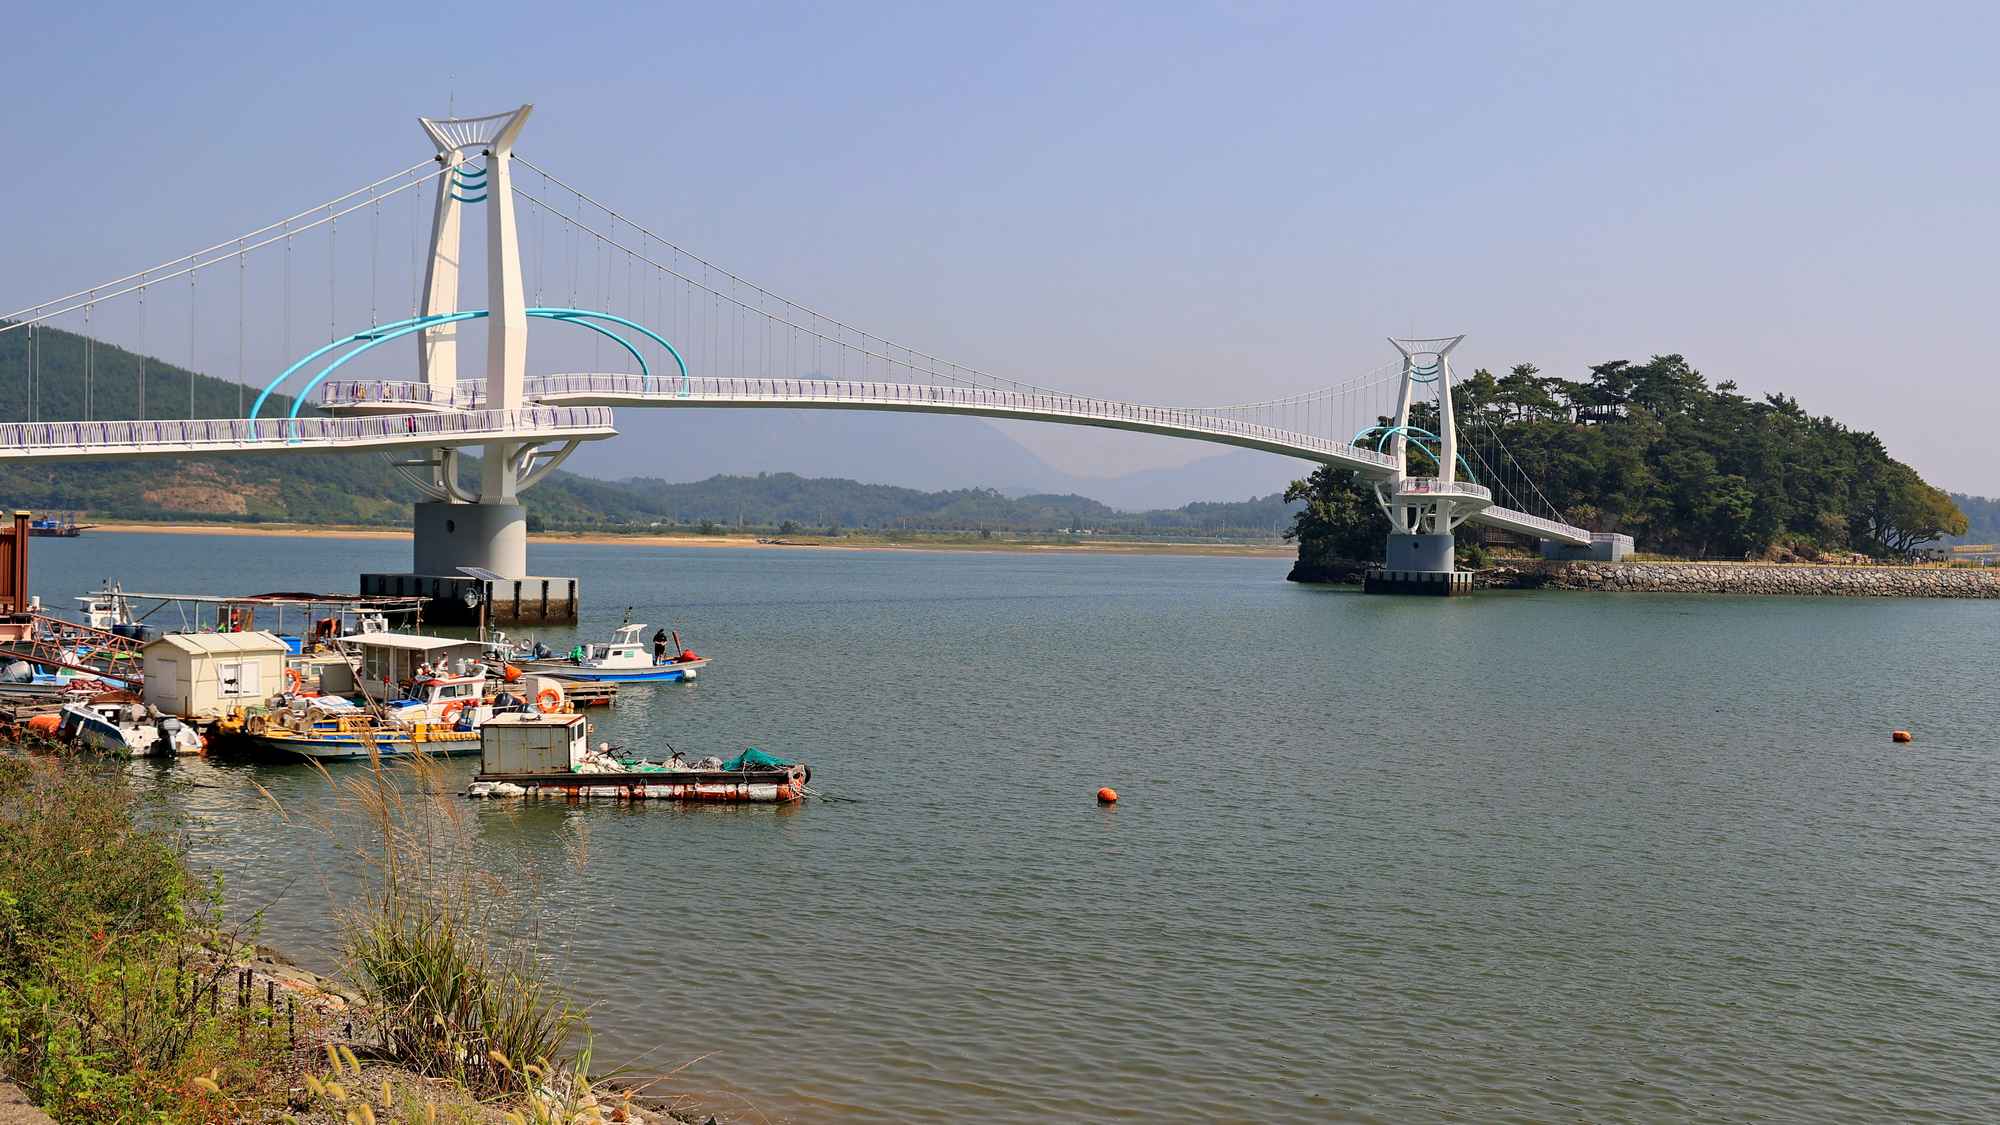 Seomjingang Bike Path - Gokseong Gwangyang - Baealdo Pedestrian Bridge and Boats